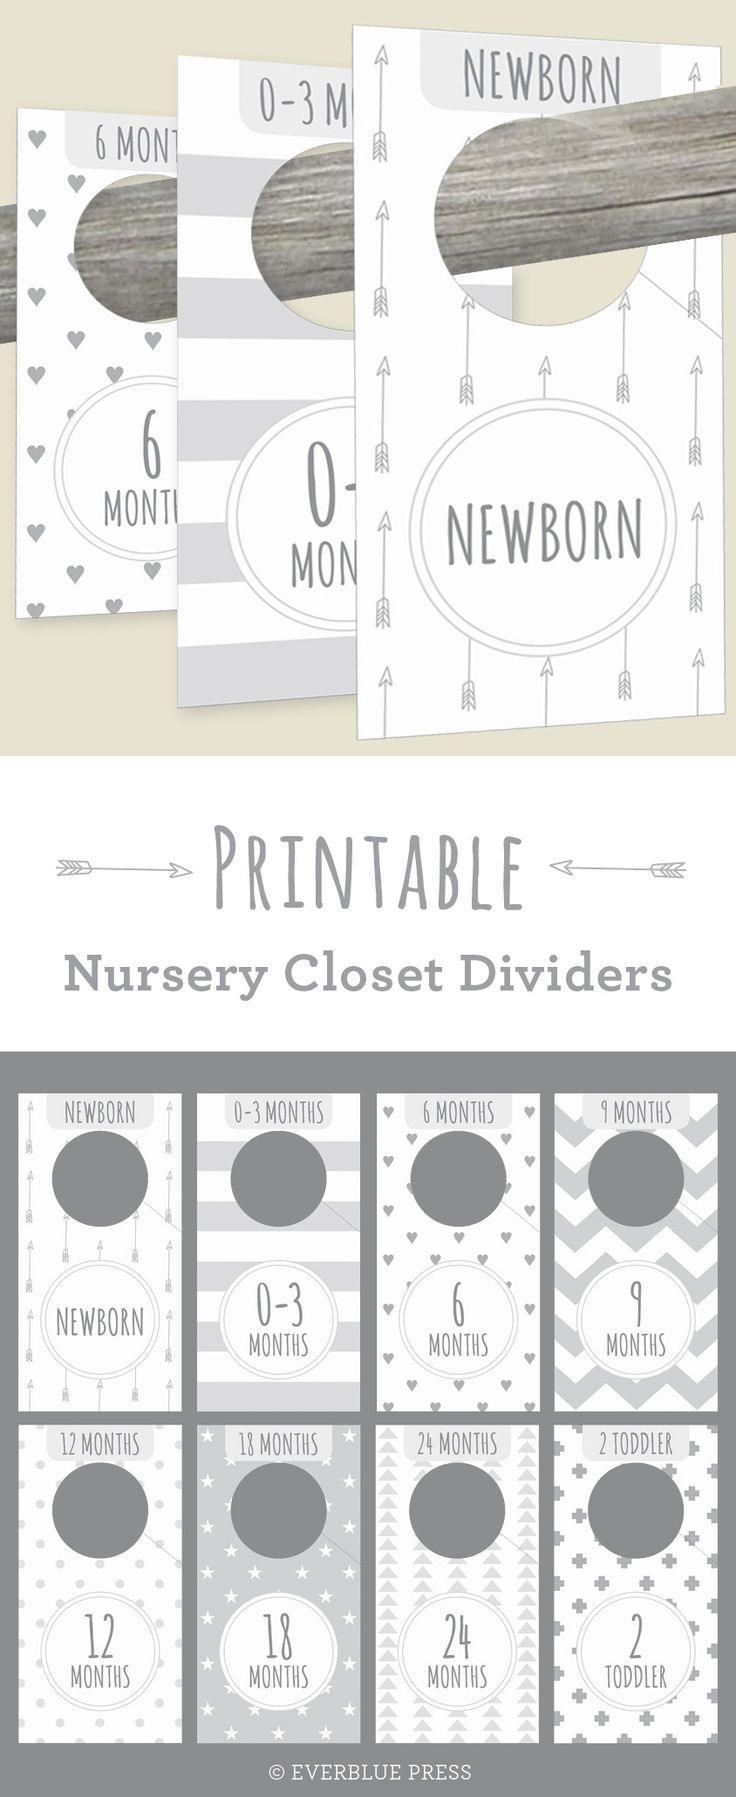 These Cute Printable Nursery Closet Dividers In Gender Neutral - Free Printable Nursery Organizers